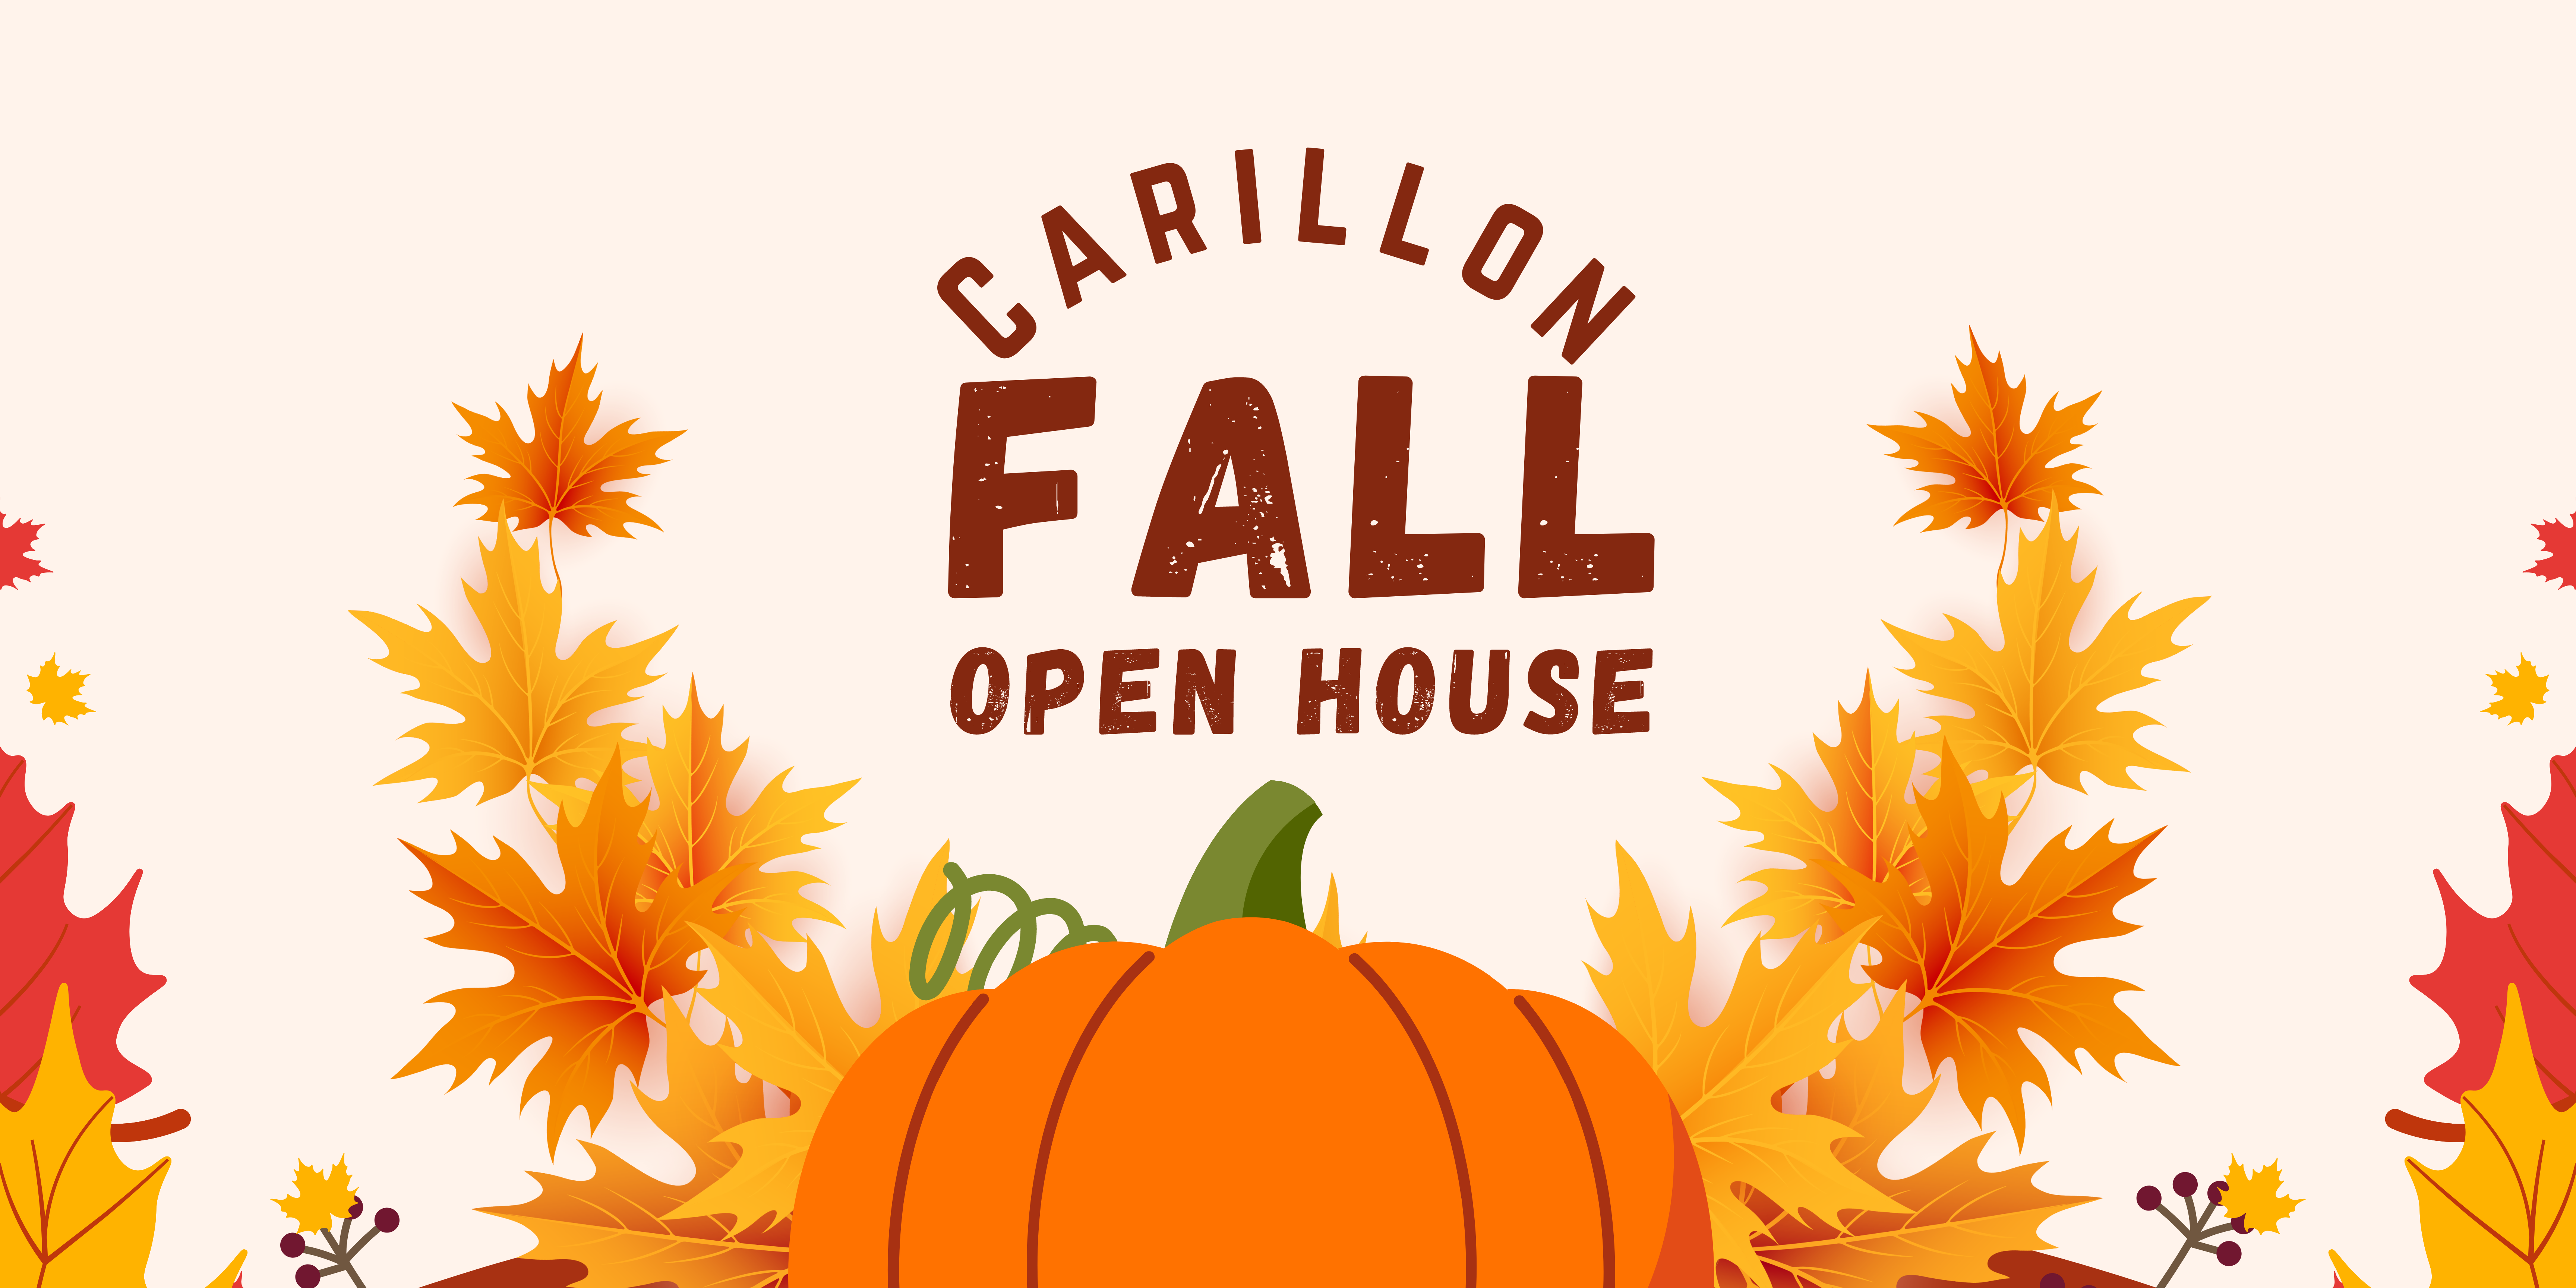 Carillon Fall Open House